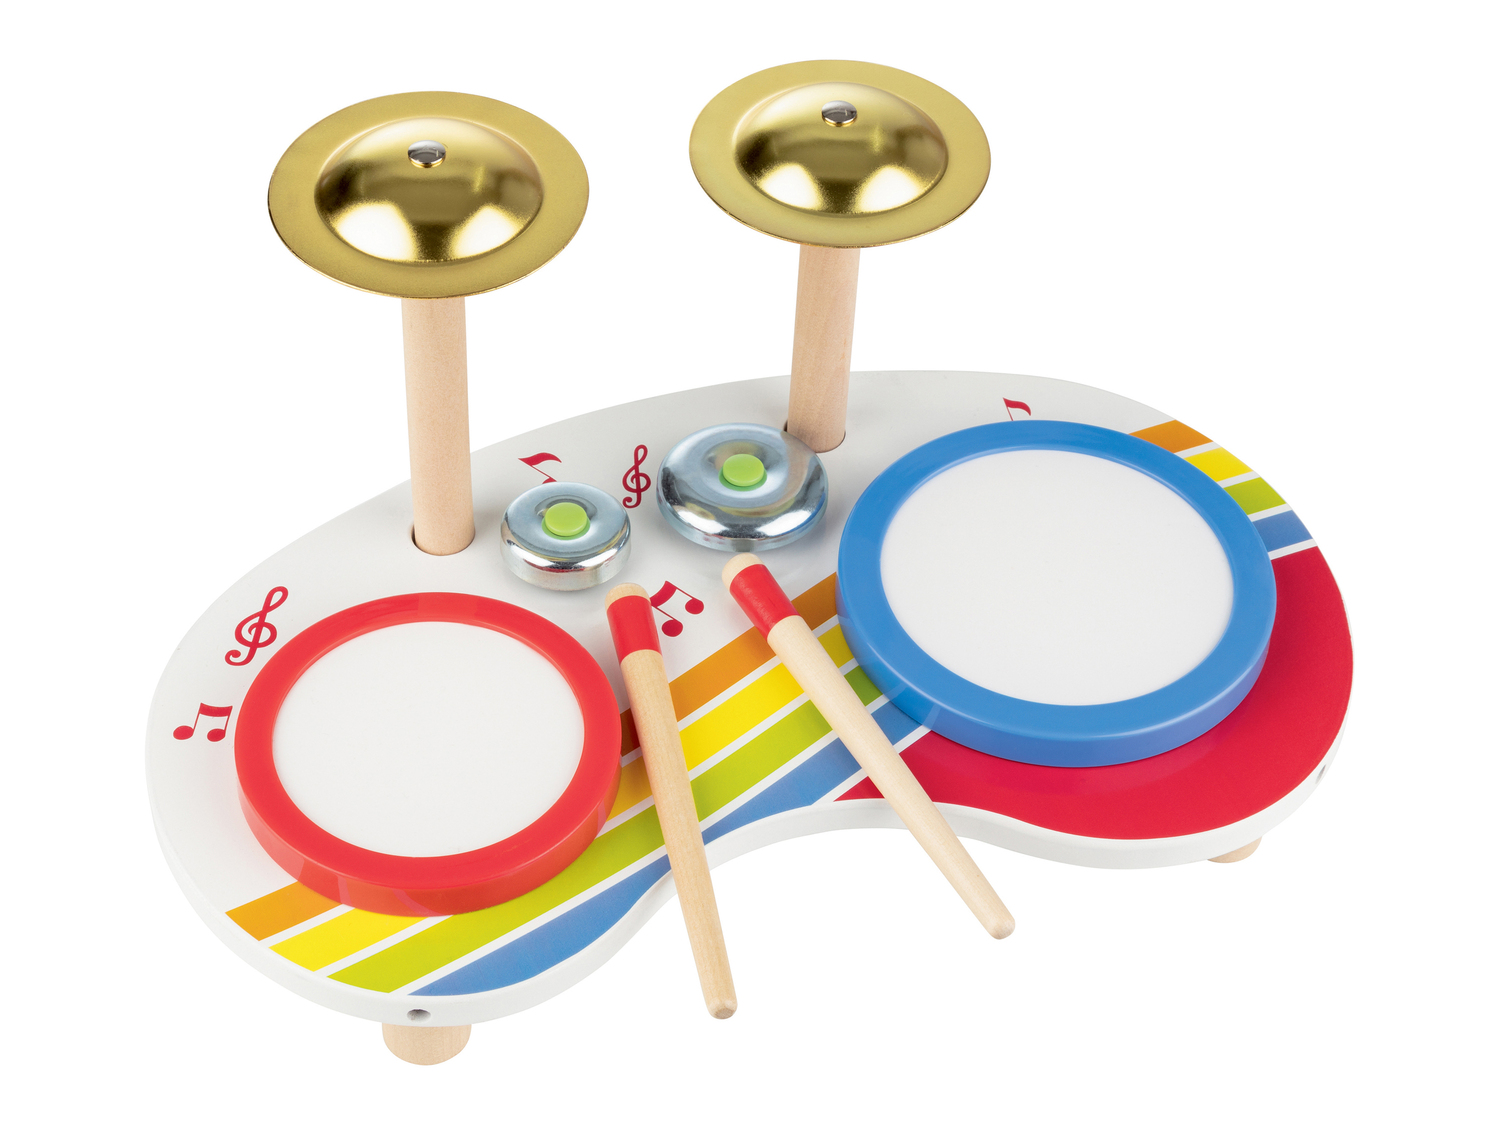 Set strumenti musicali per bambini Playtive, prezzo 11.99 &#8364; 

Caratteristiche

- ...